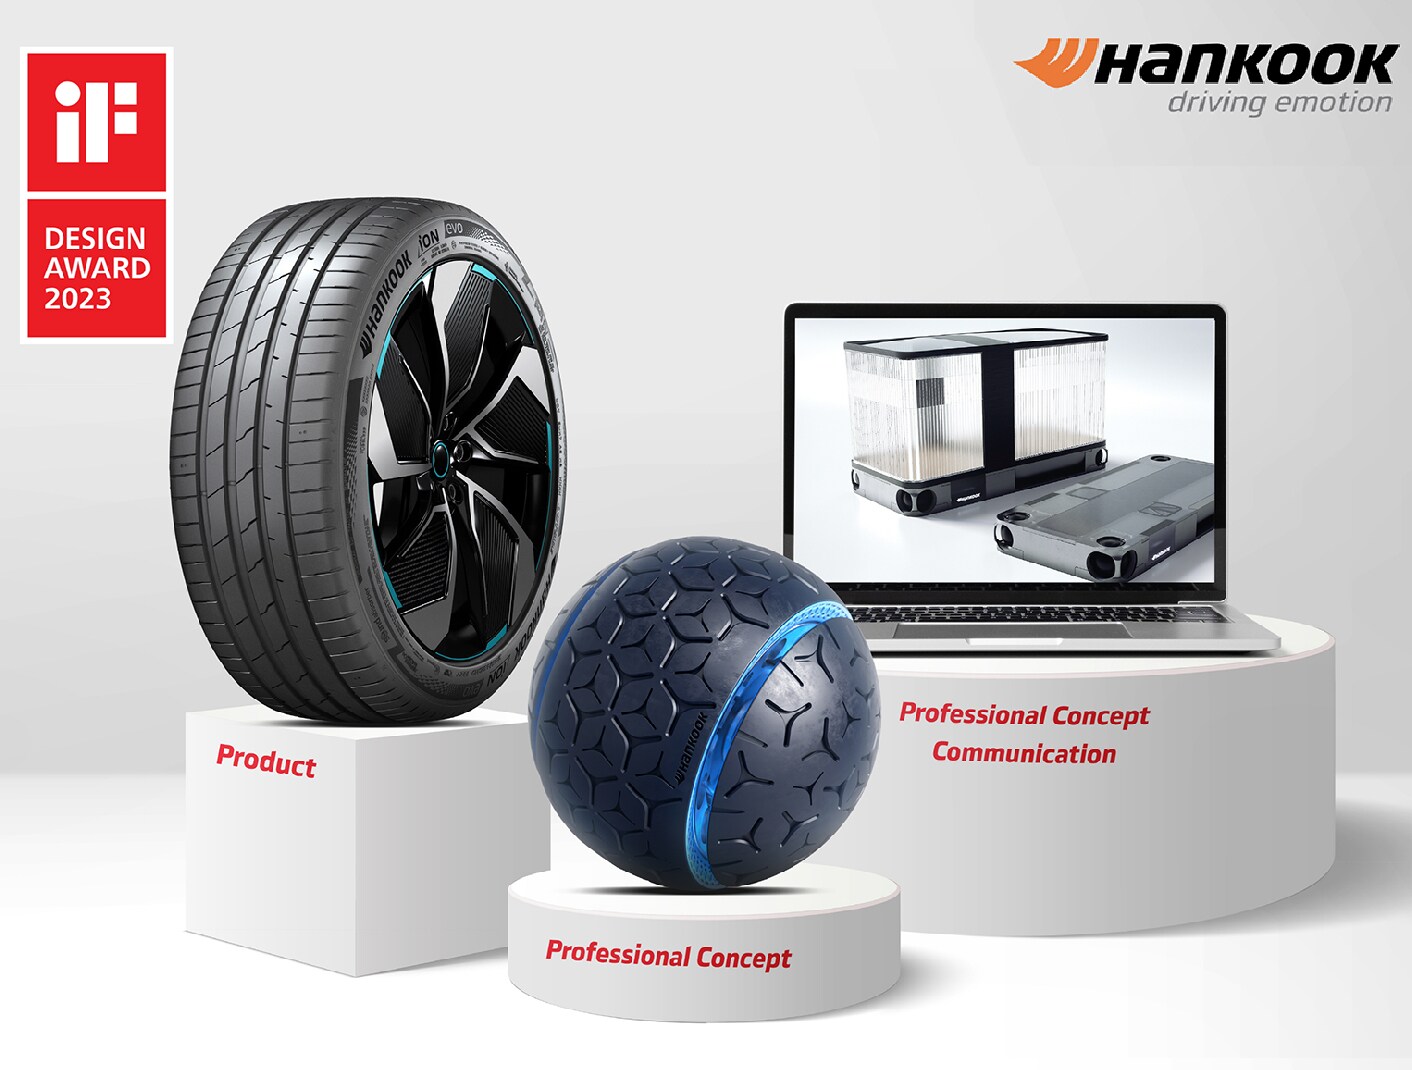 A excelência em tecnologia e design da Hankook Tire é reconhecida no iF Design Award 2023 